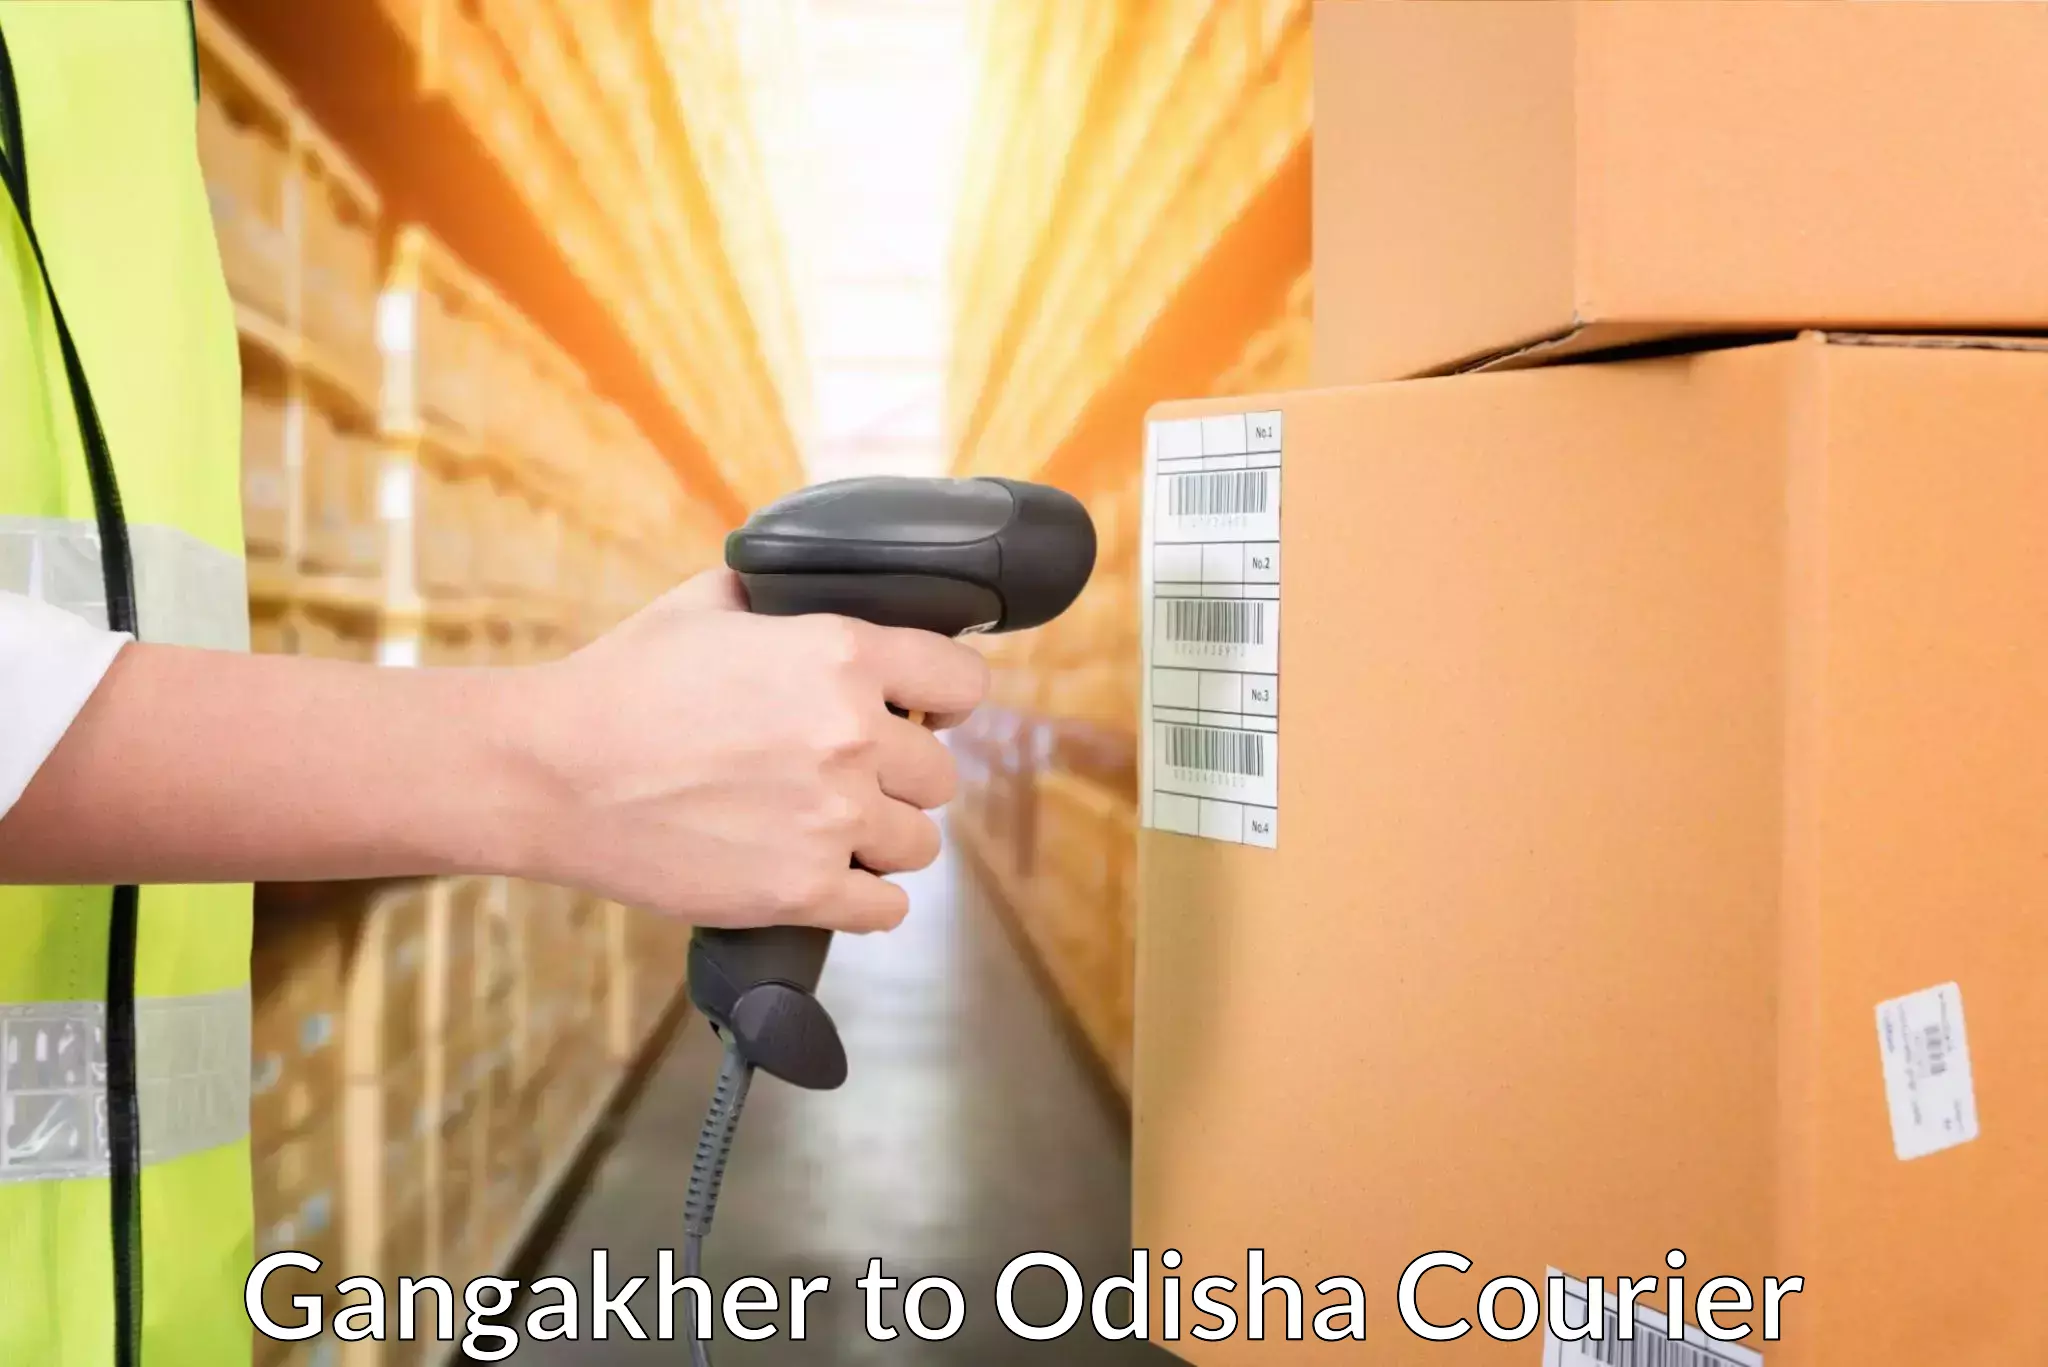 Customer-focused courier Gangakher to Ukhunda